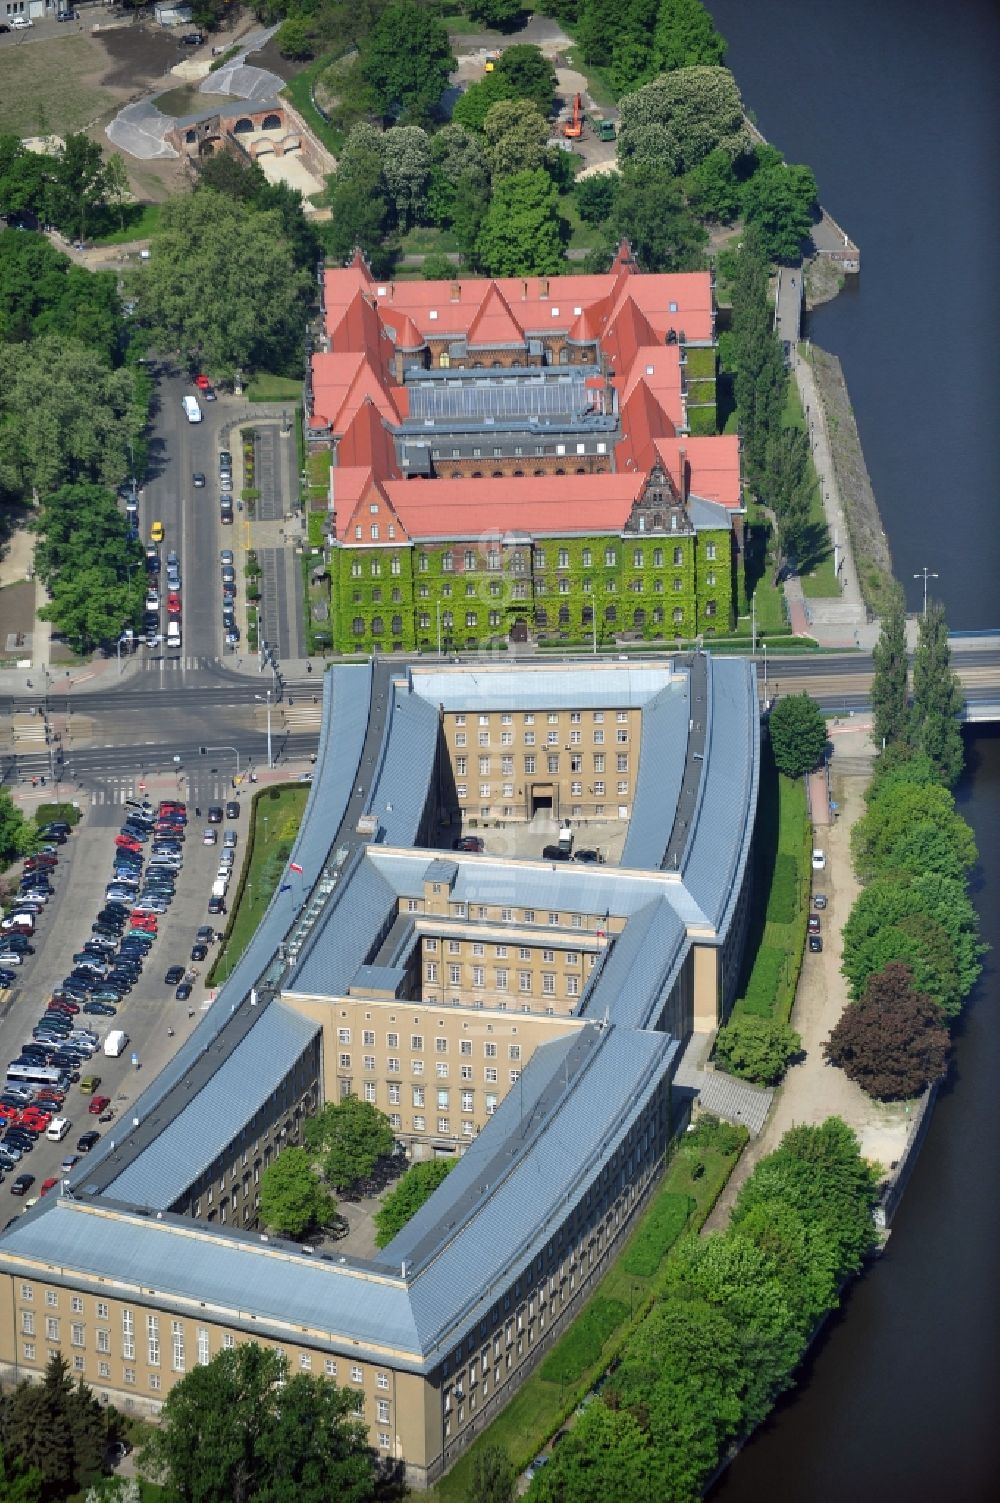 Luftbild Breslau / Wroclaw - Gebäude des Regierungspräsidium Niederschlesien am Ufer des Flusses Olawa ( auch Ohle oder Ola genannt) in Breslau / Wroclaw in Polen